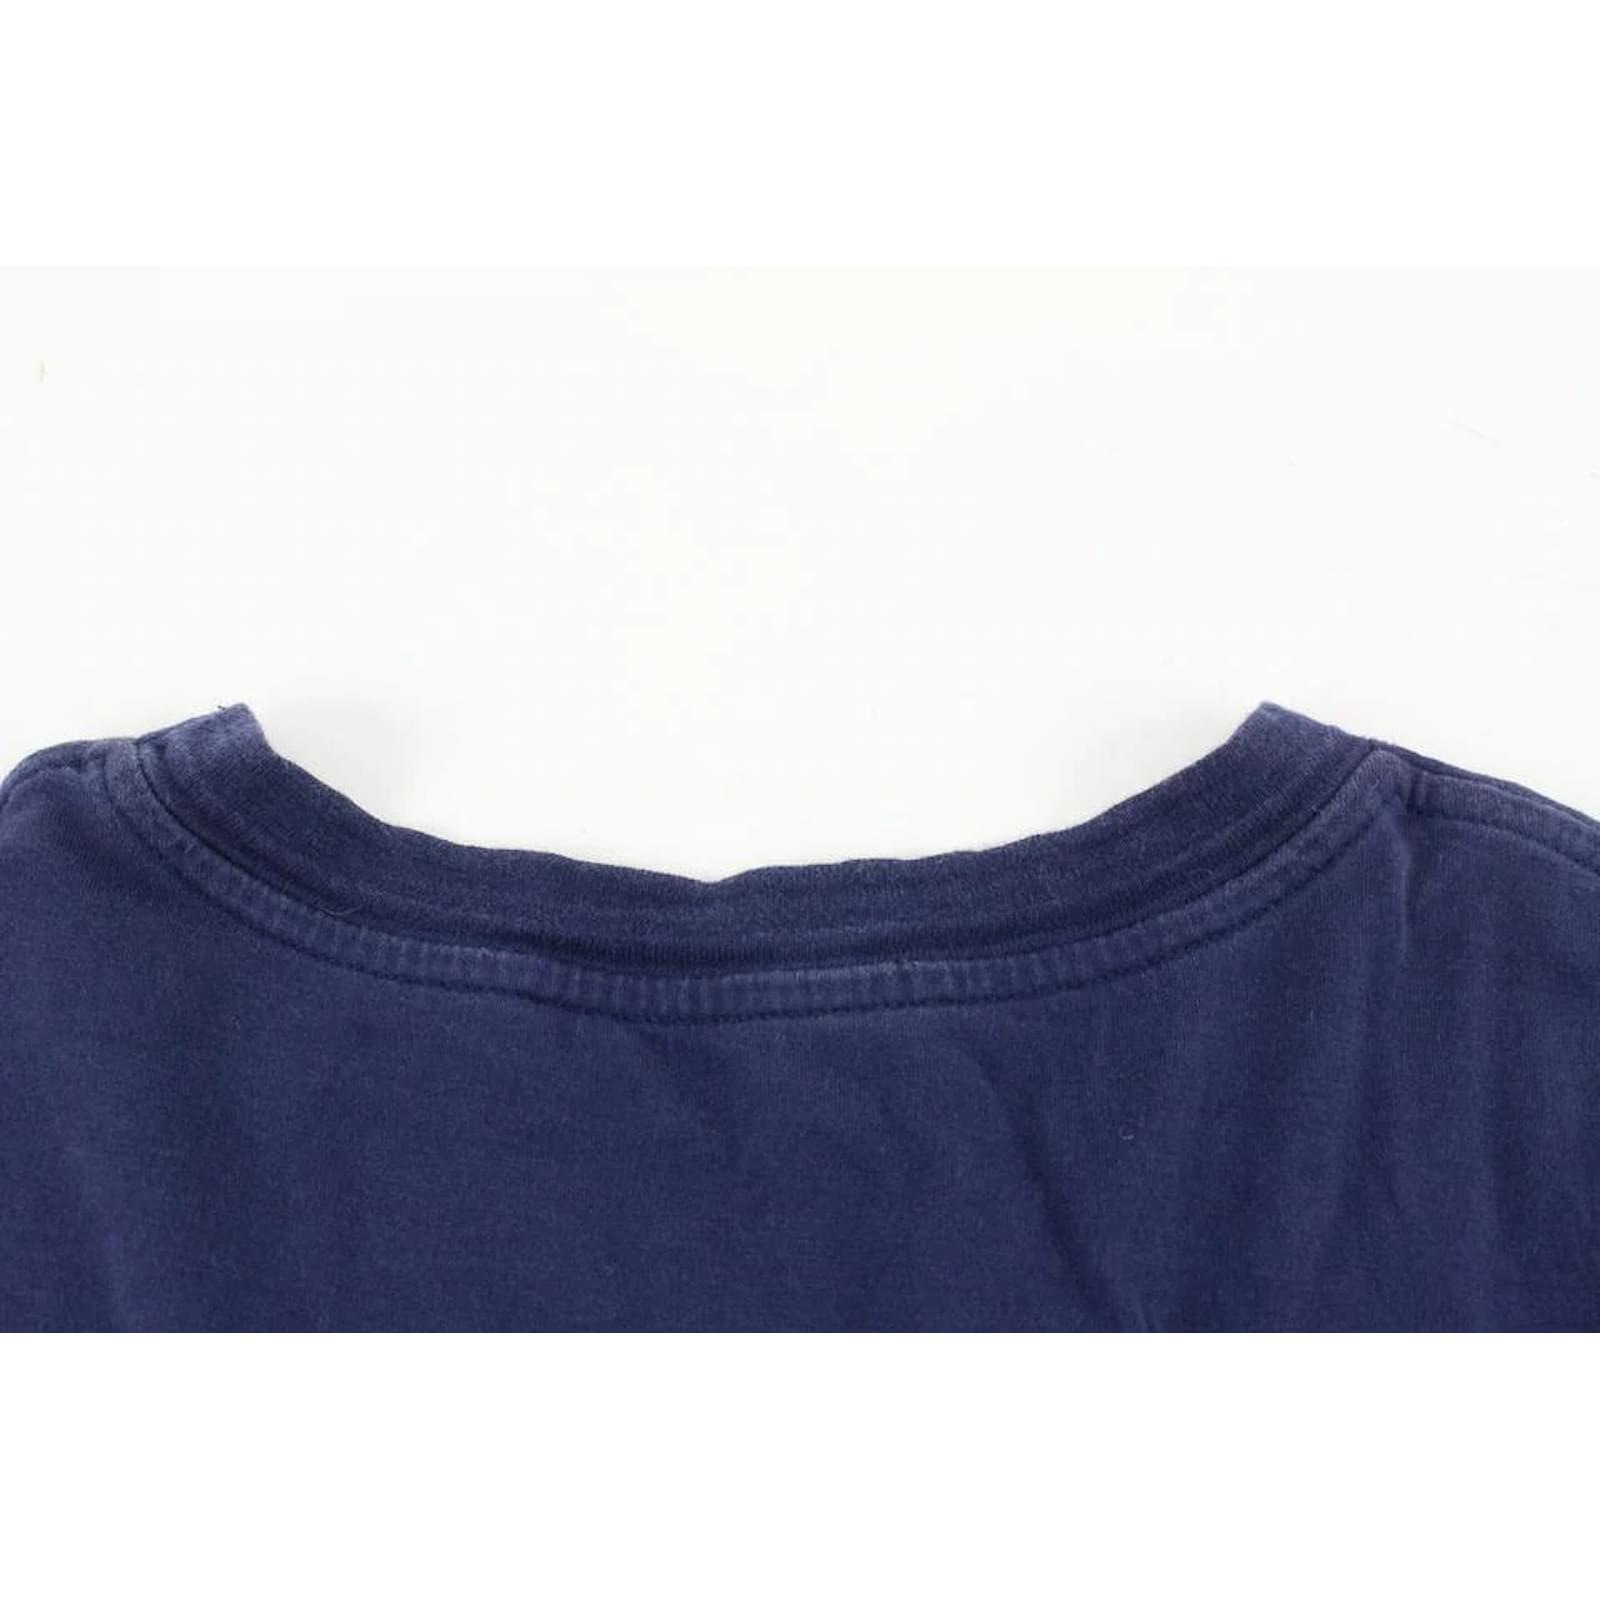 Camiseta Louis Vuitton Hombre XL Azul Marino Oso LV 114lv10 en